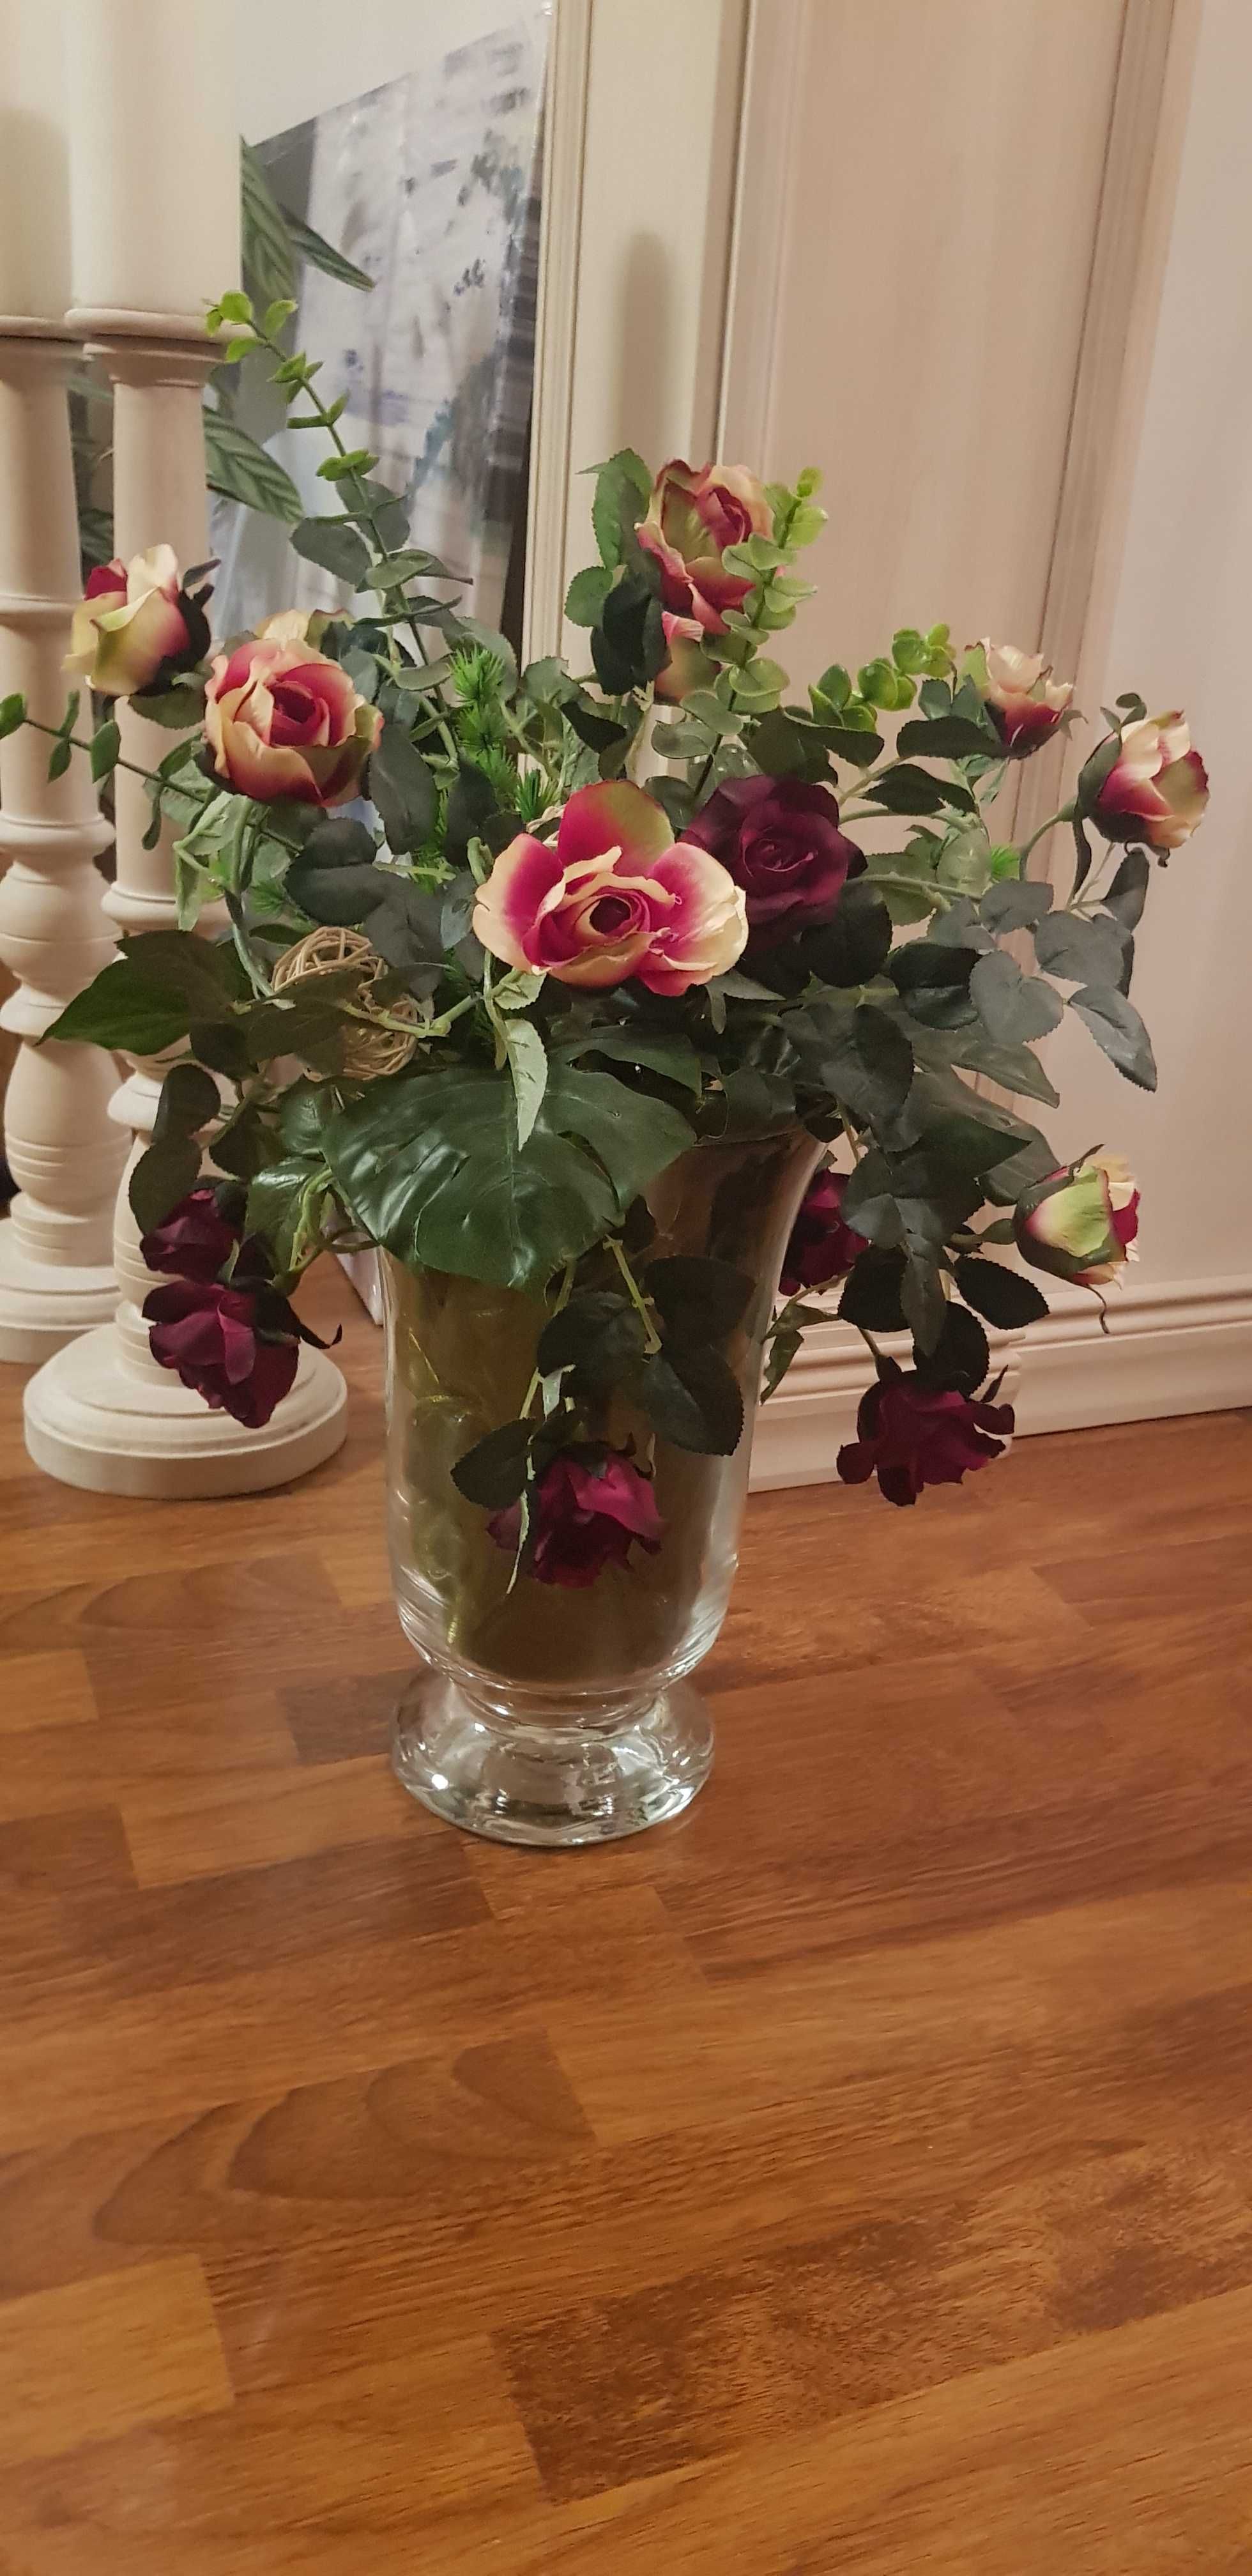 Bukiet pięknych róż do wazonu polecam